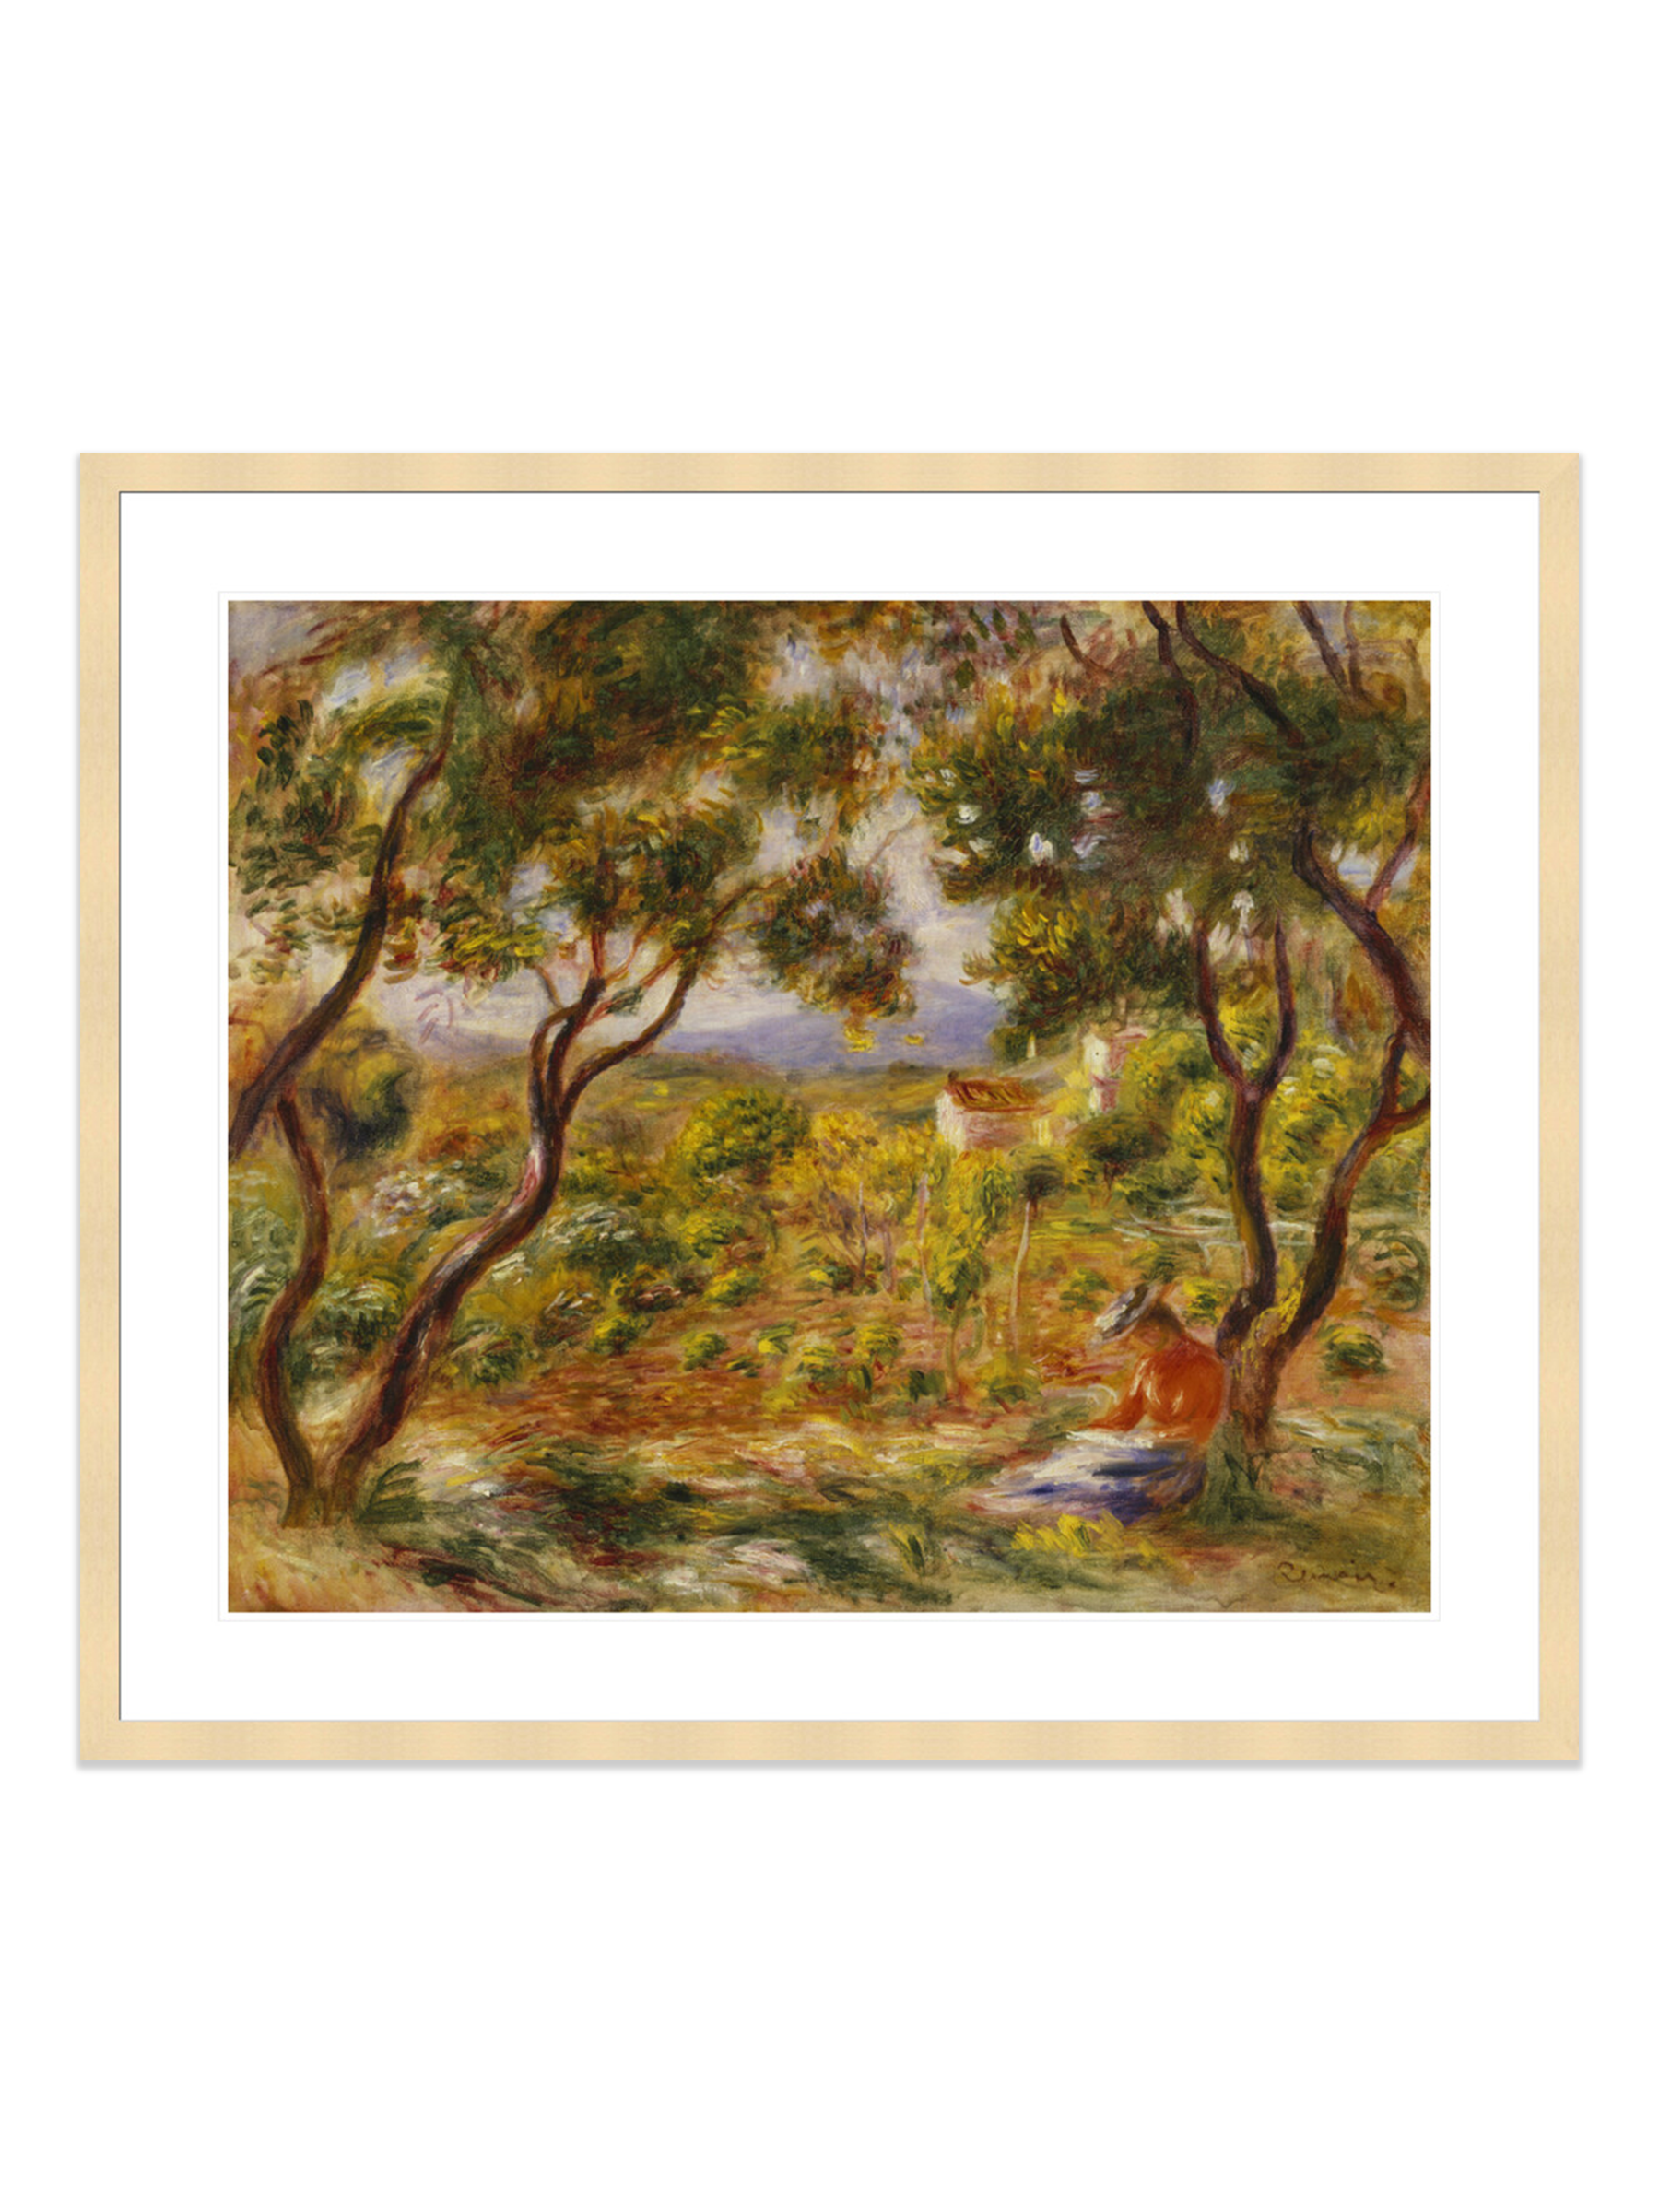 The Vineyards at Cagnes (Les Vignes   Cagnes) (Print) by Pierre-Auguste Renoir